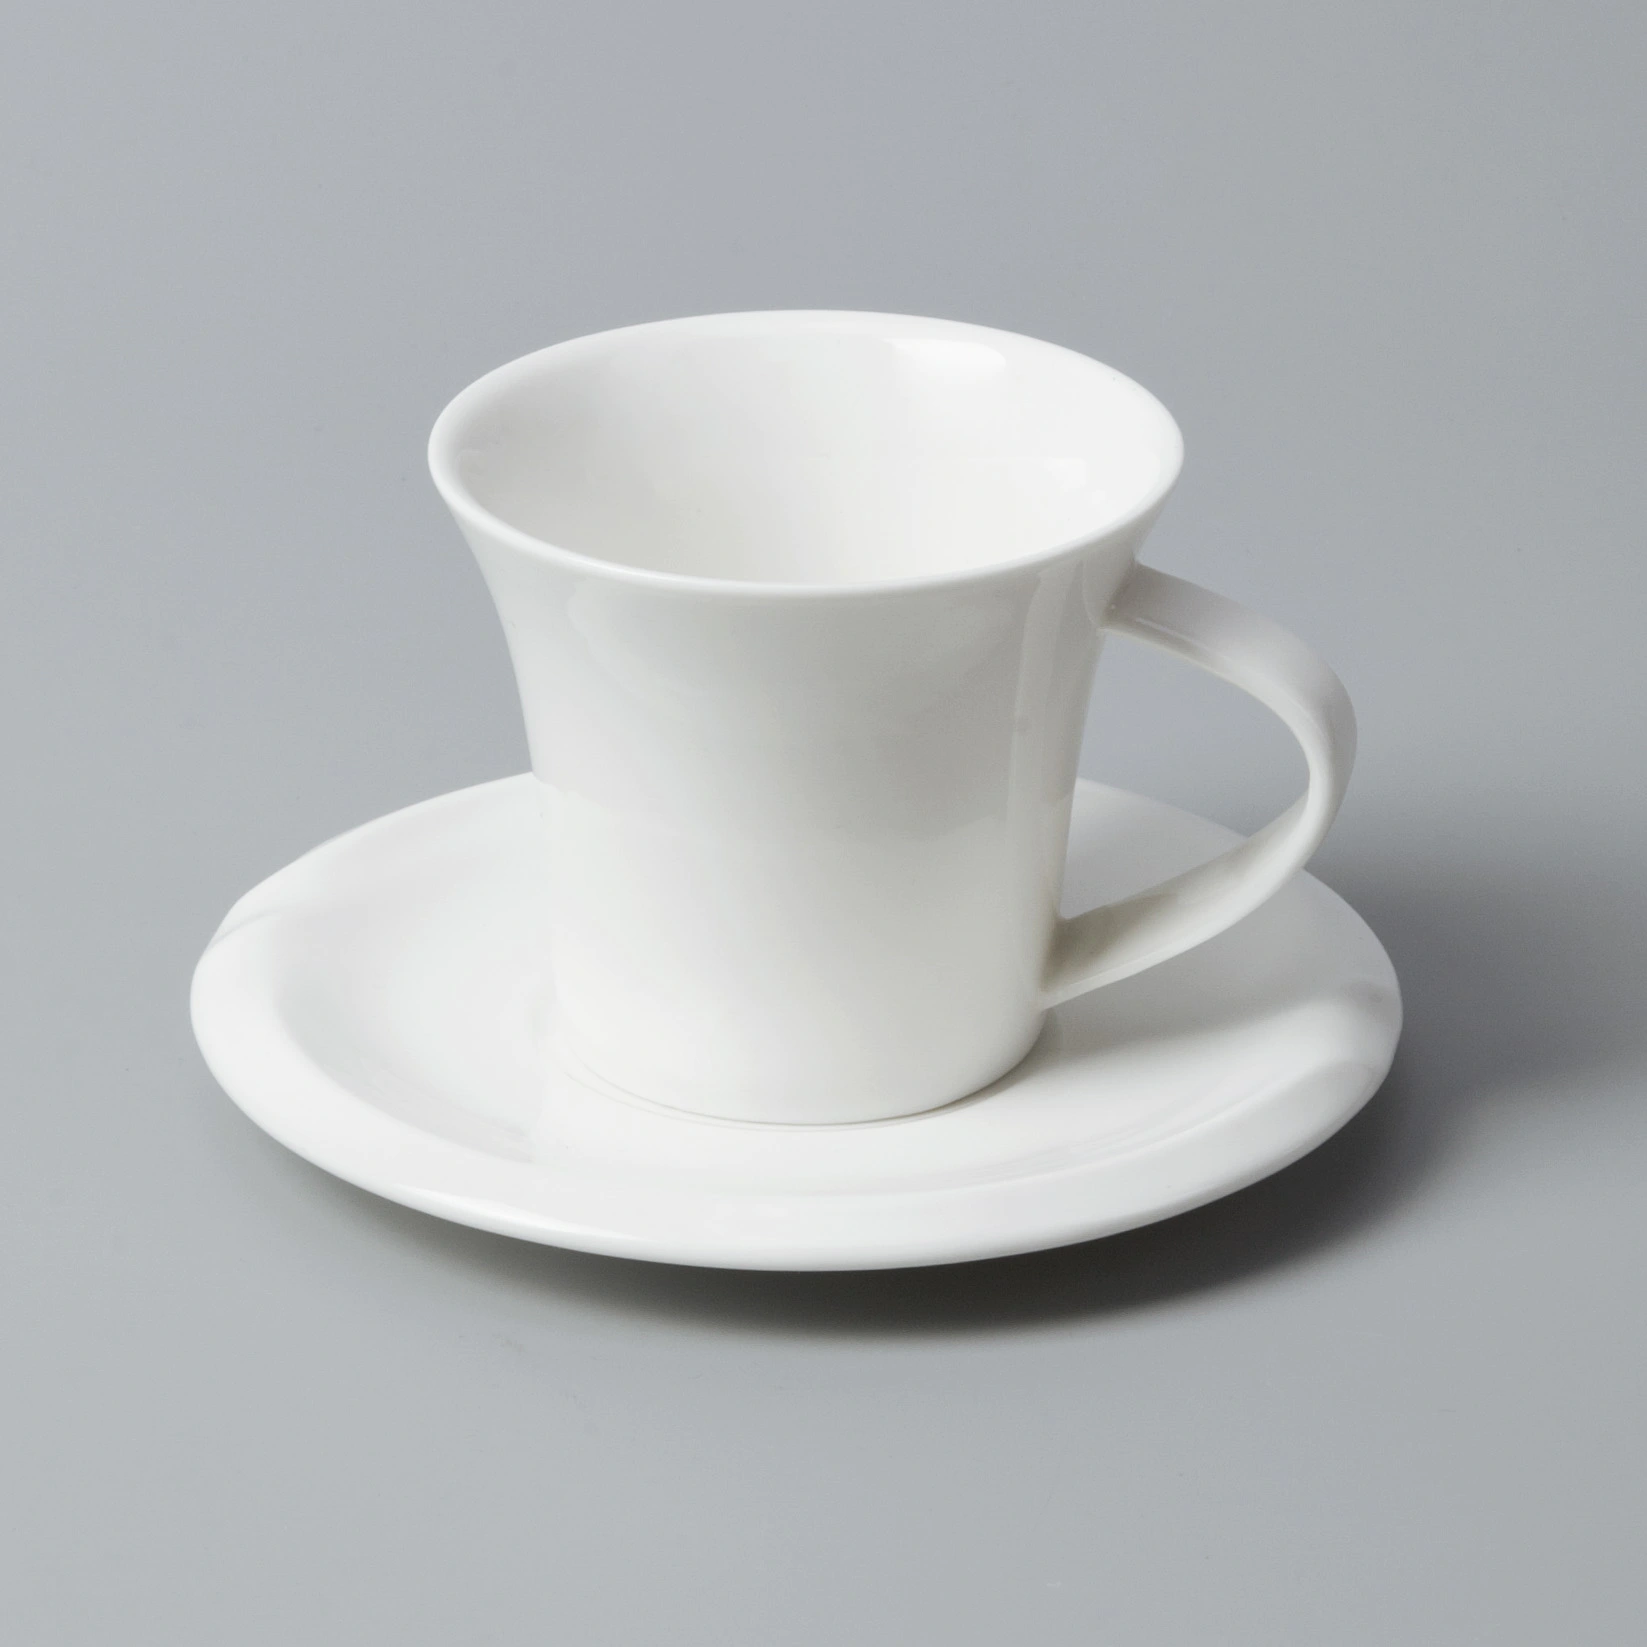 sample fine ceramic dinnerware stock for dinning room Two Eight